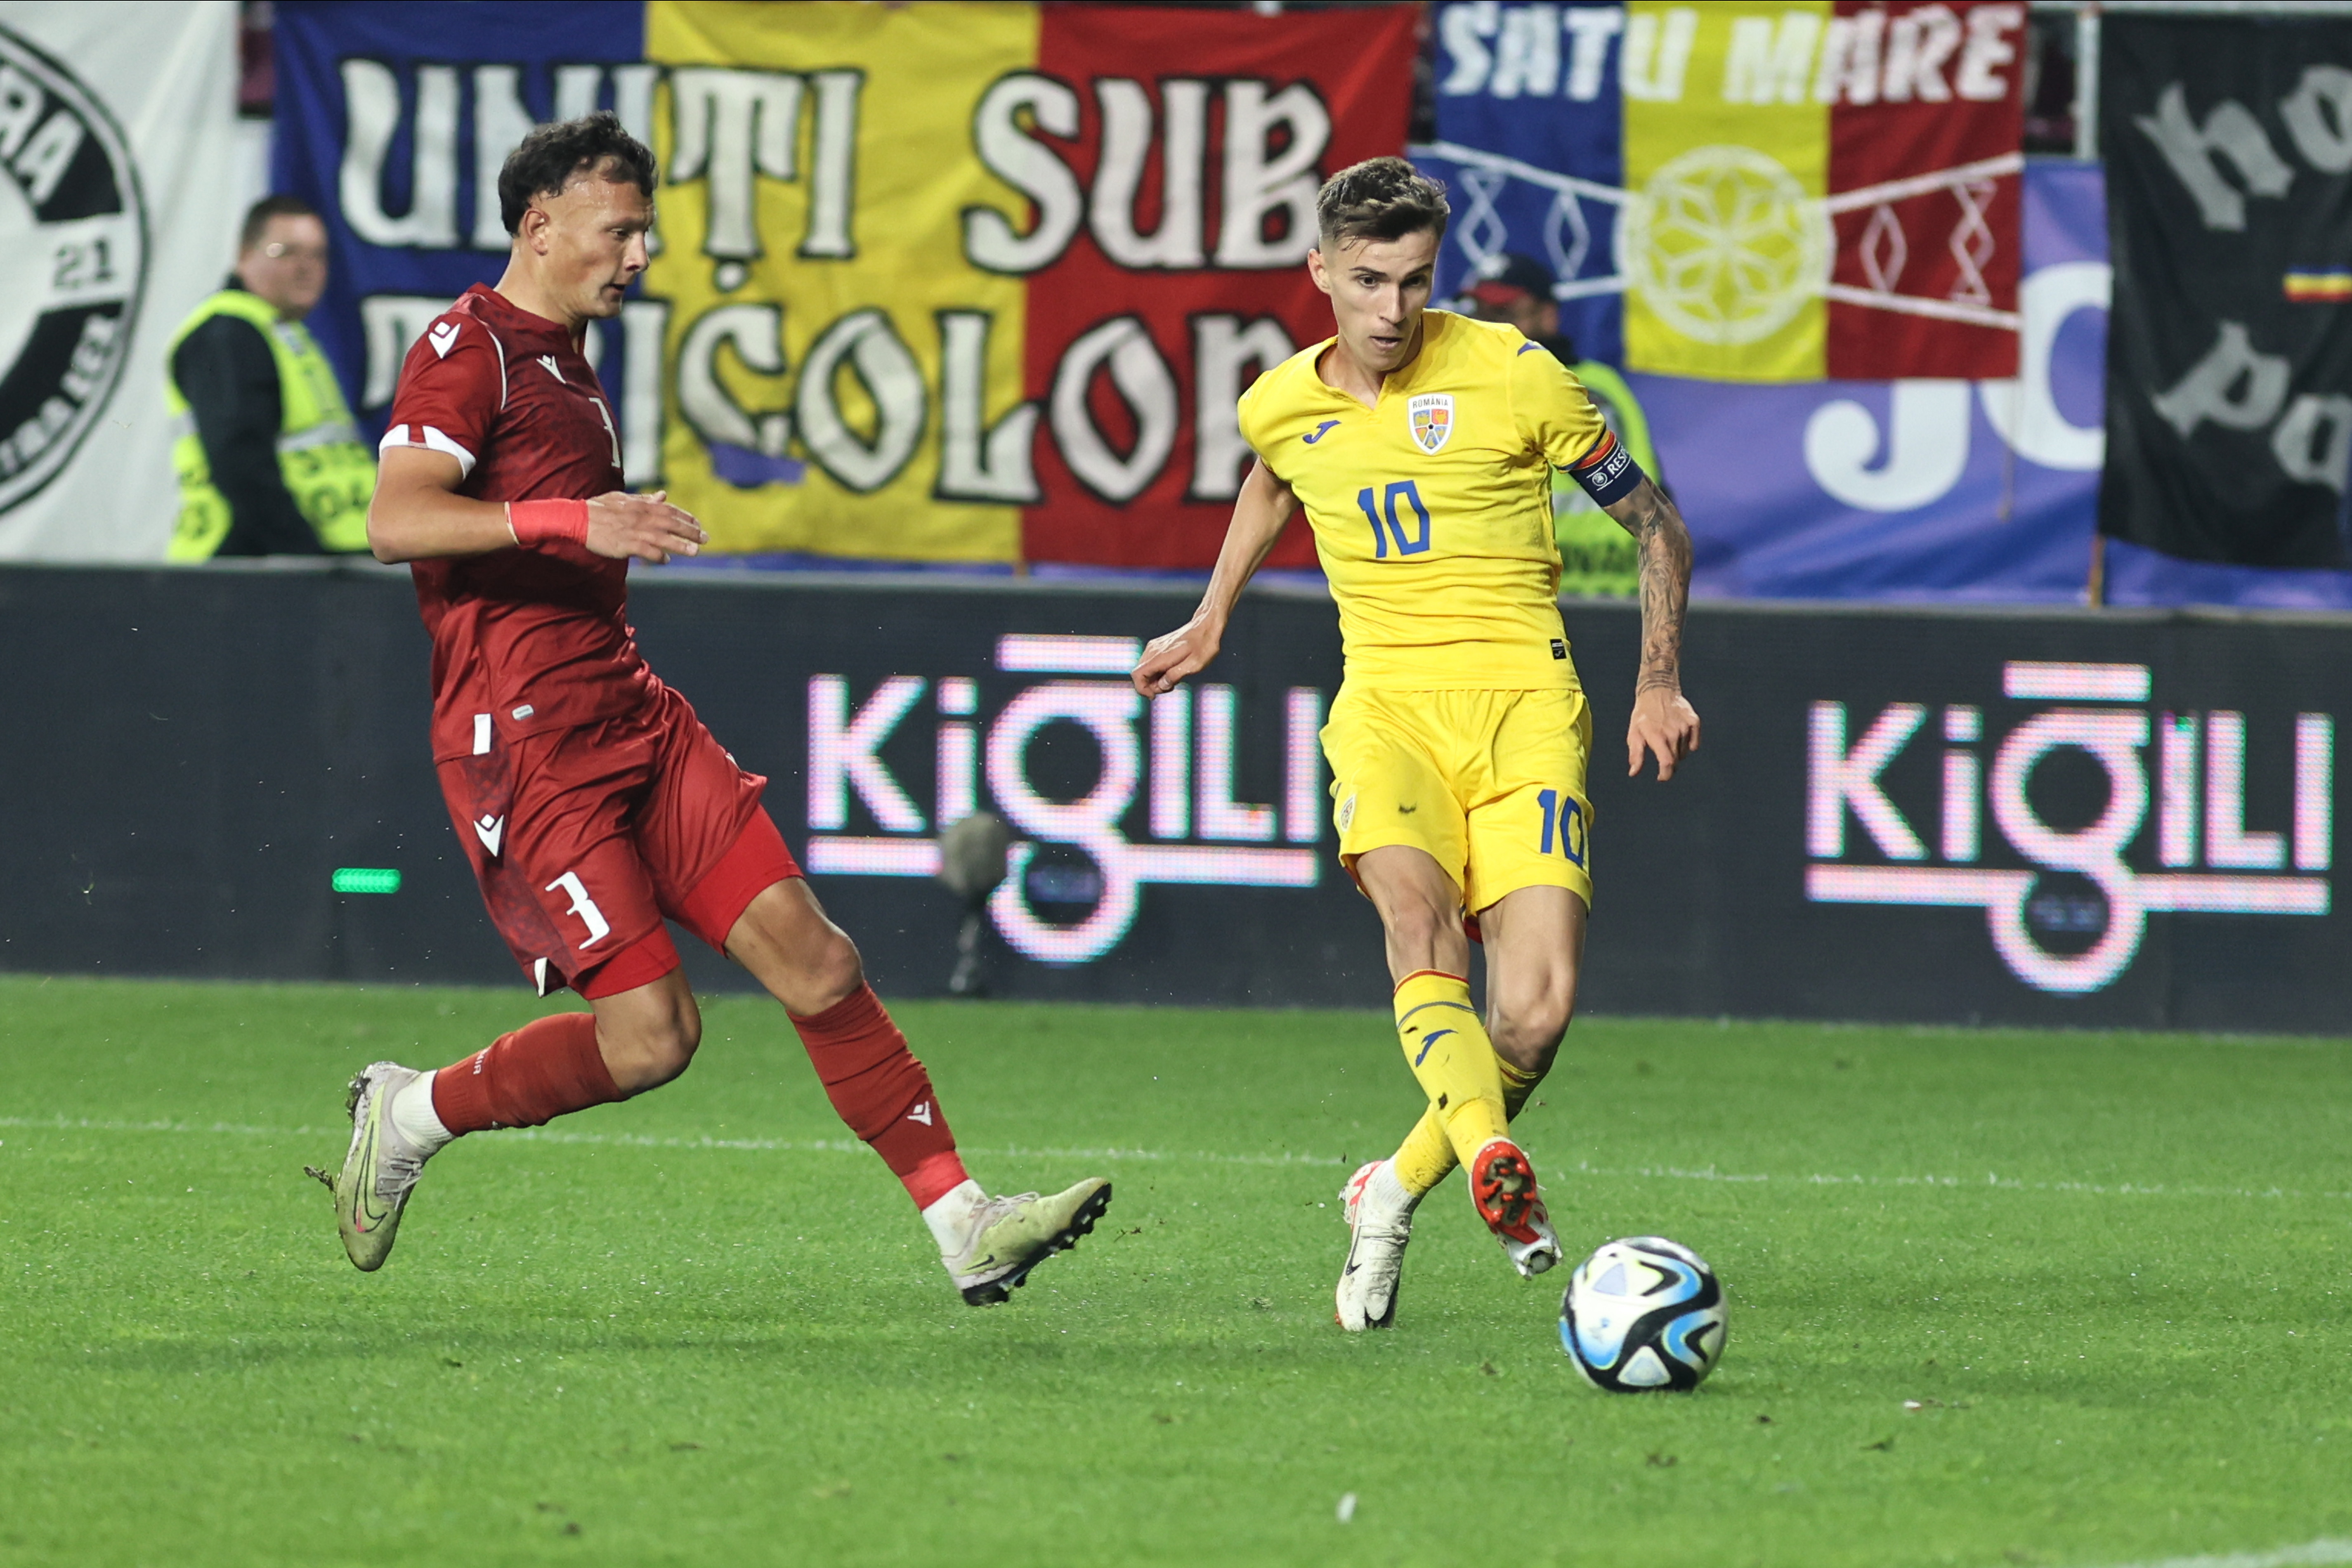 România U21 - Finlanda U21, LIVE TEXT,18:00, digisport.ro. Cu o victorie, ”Tricolorii” mici pot urca pe loc de calificare